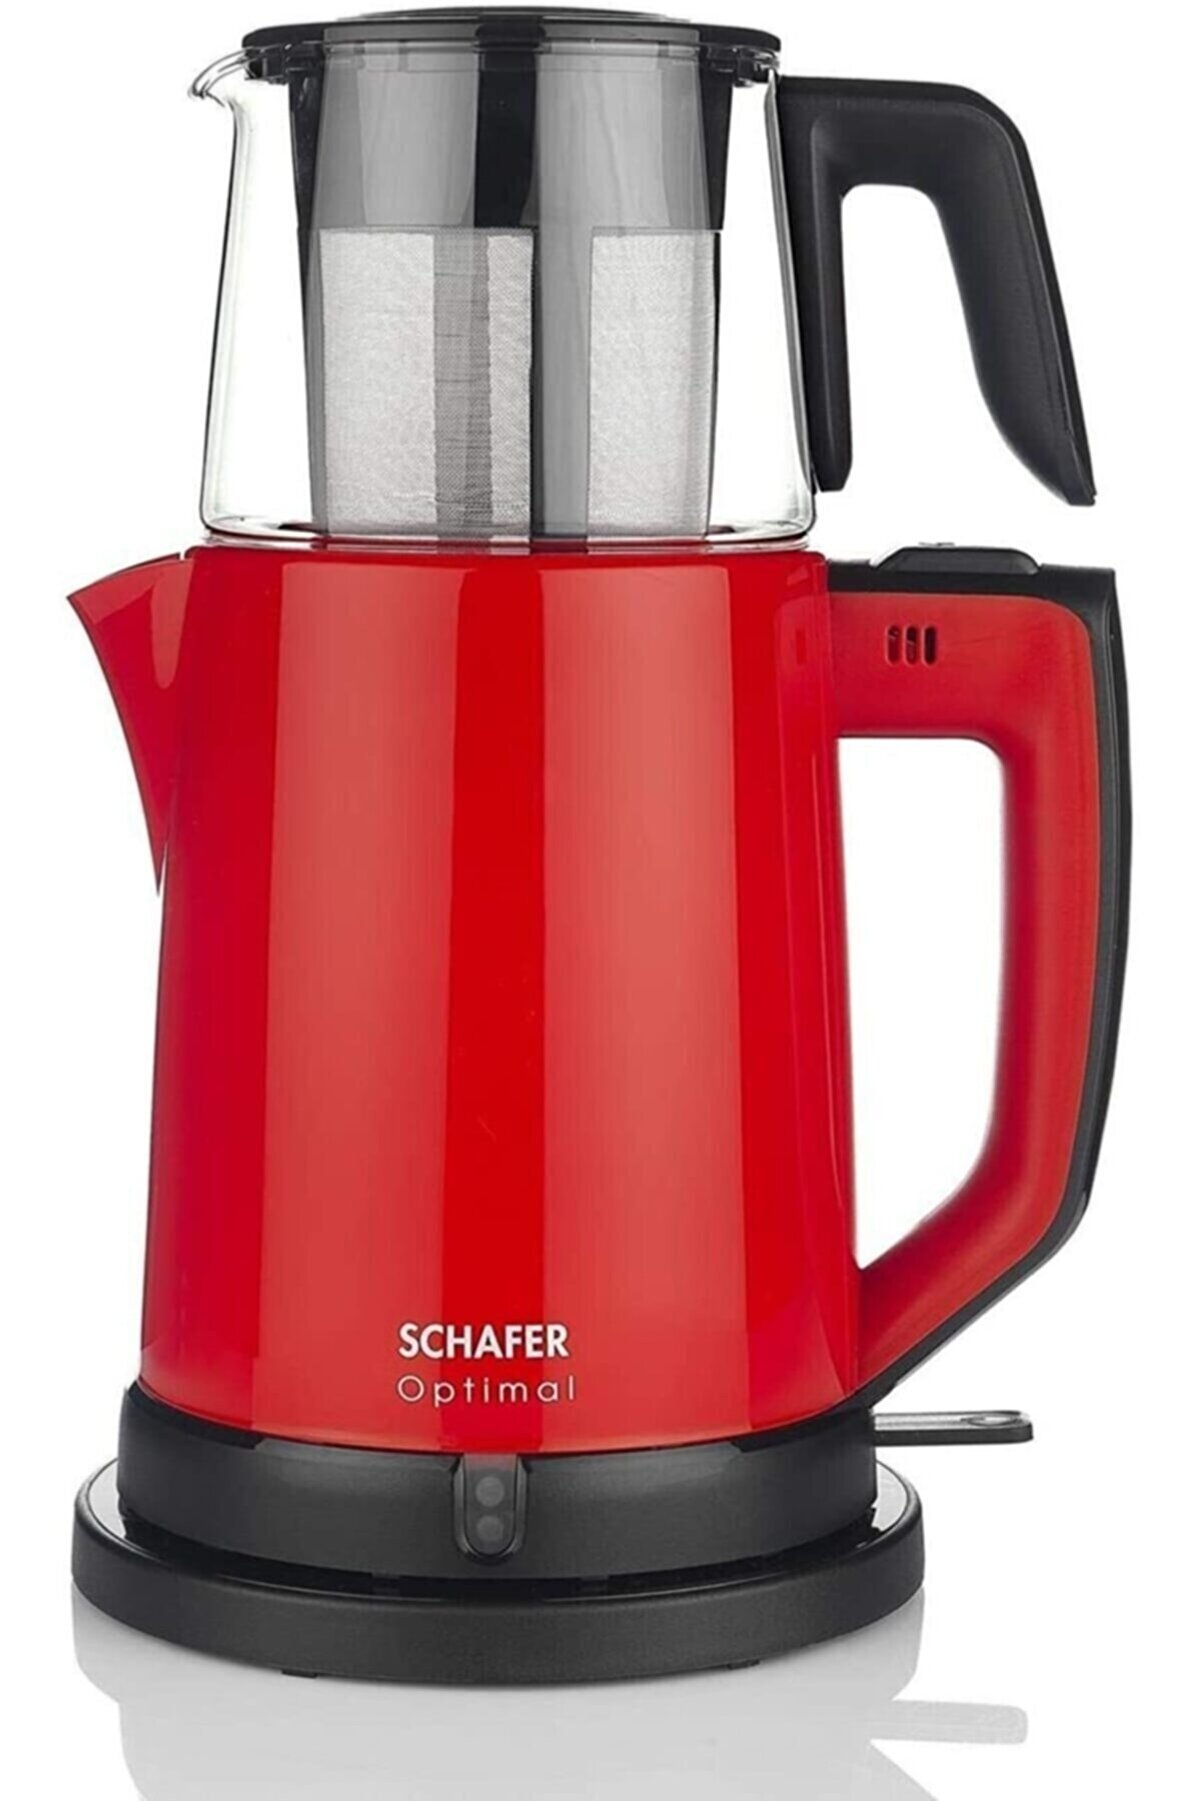 Schafer Optimal Çay Makinesi - Kırmızı